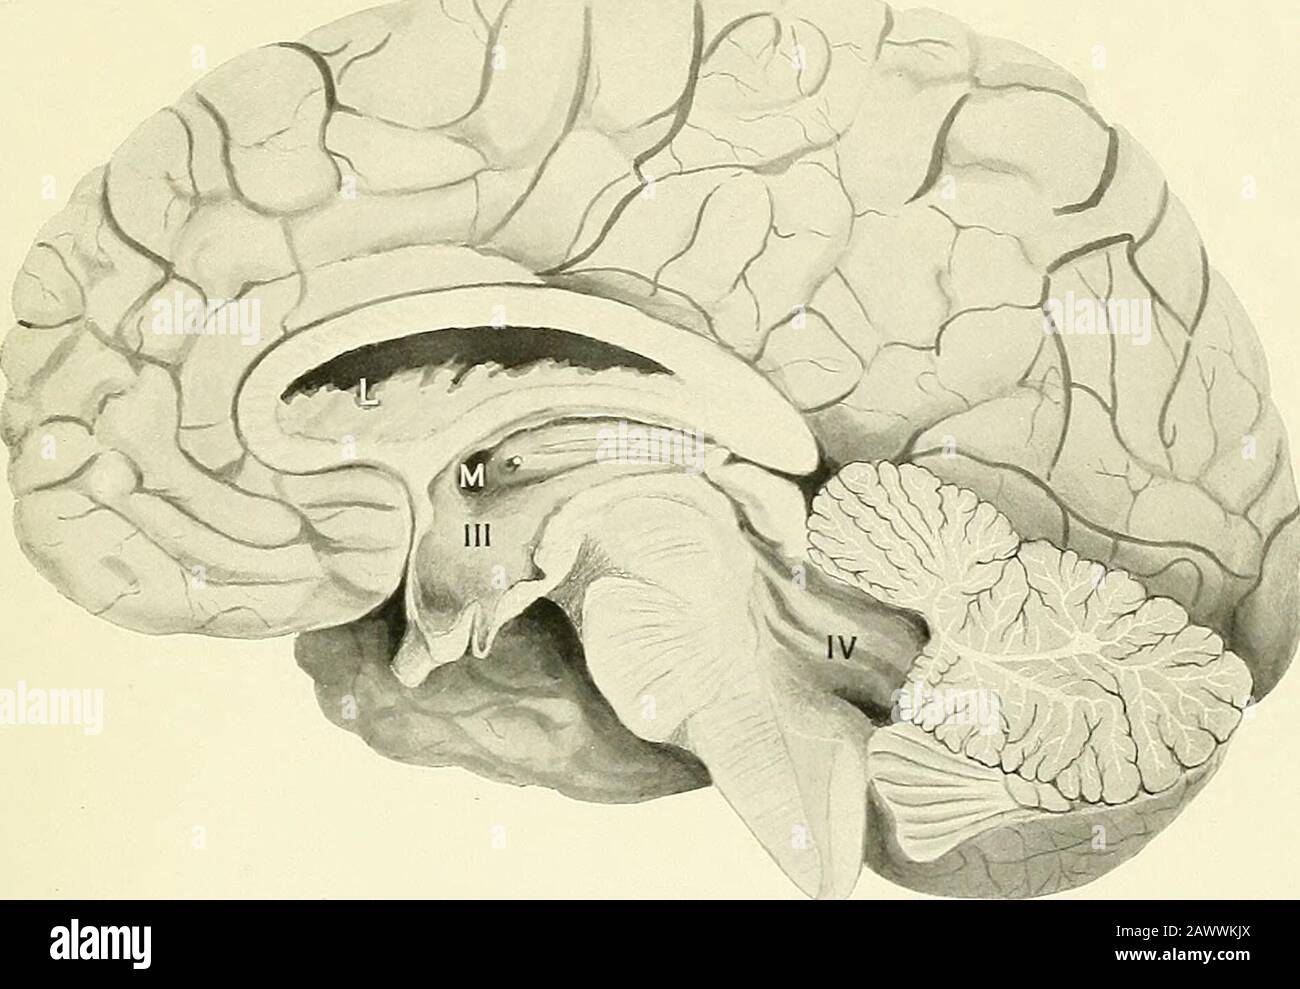 Fiebre cerebro-espinal . erción del índice. Las Téconvoluciones del cerebro se aplanan, pero no en grado extremo. El cable de la misma caja es pelado en la placa X, fig. .3. El bloqueo en el espacio sub-aracnoideo en la región dorsal superior impidió la rehef de la pressureación ventricular por punción lumbar. No hubo un bloqueo evidente en la región del plexo coroideo del ventrículo foiu-th, aunque éste fue adherente en un grado considerable al theerebellum. Fig. 2. El cerebro de un caso agudo que murió el décimo día de la hemorragia retroperitoneal iUness. Incluso en esta etapa temprana bien Foto de stock